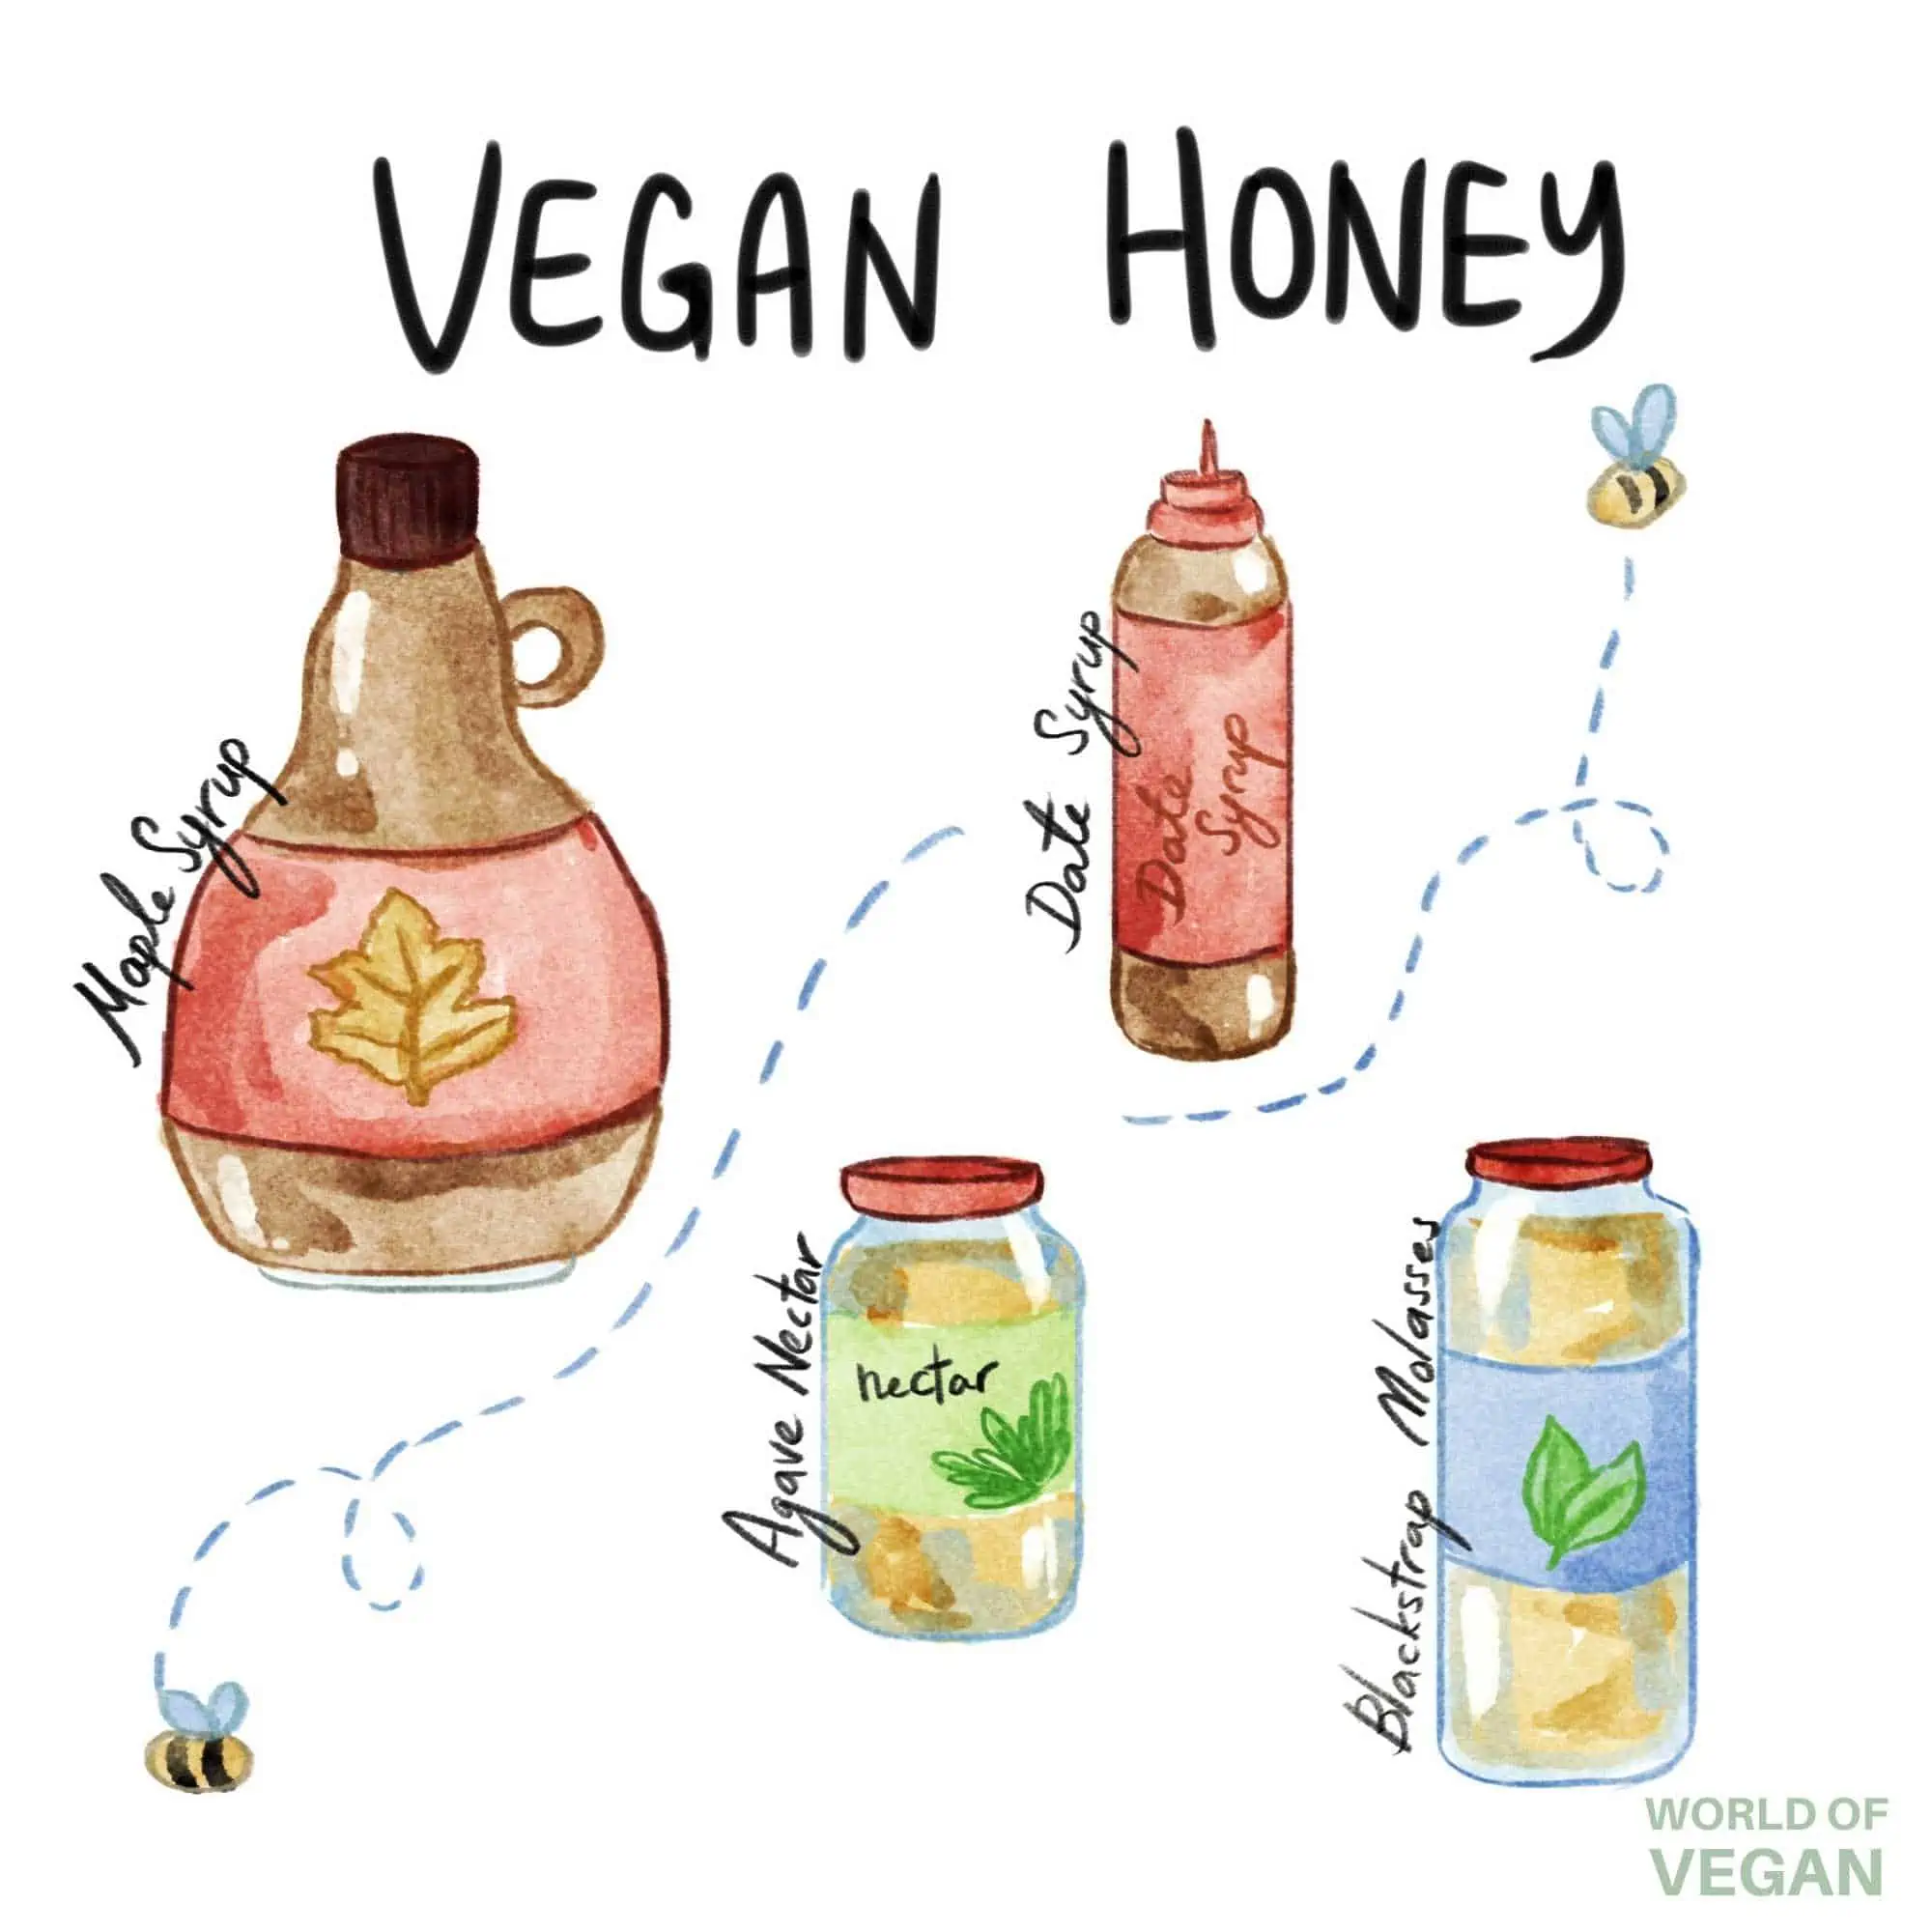 World of Vegan Honey Art Agave Maple Molasses Date Syrup Illustration